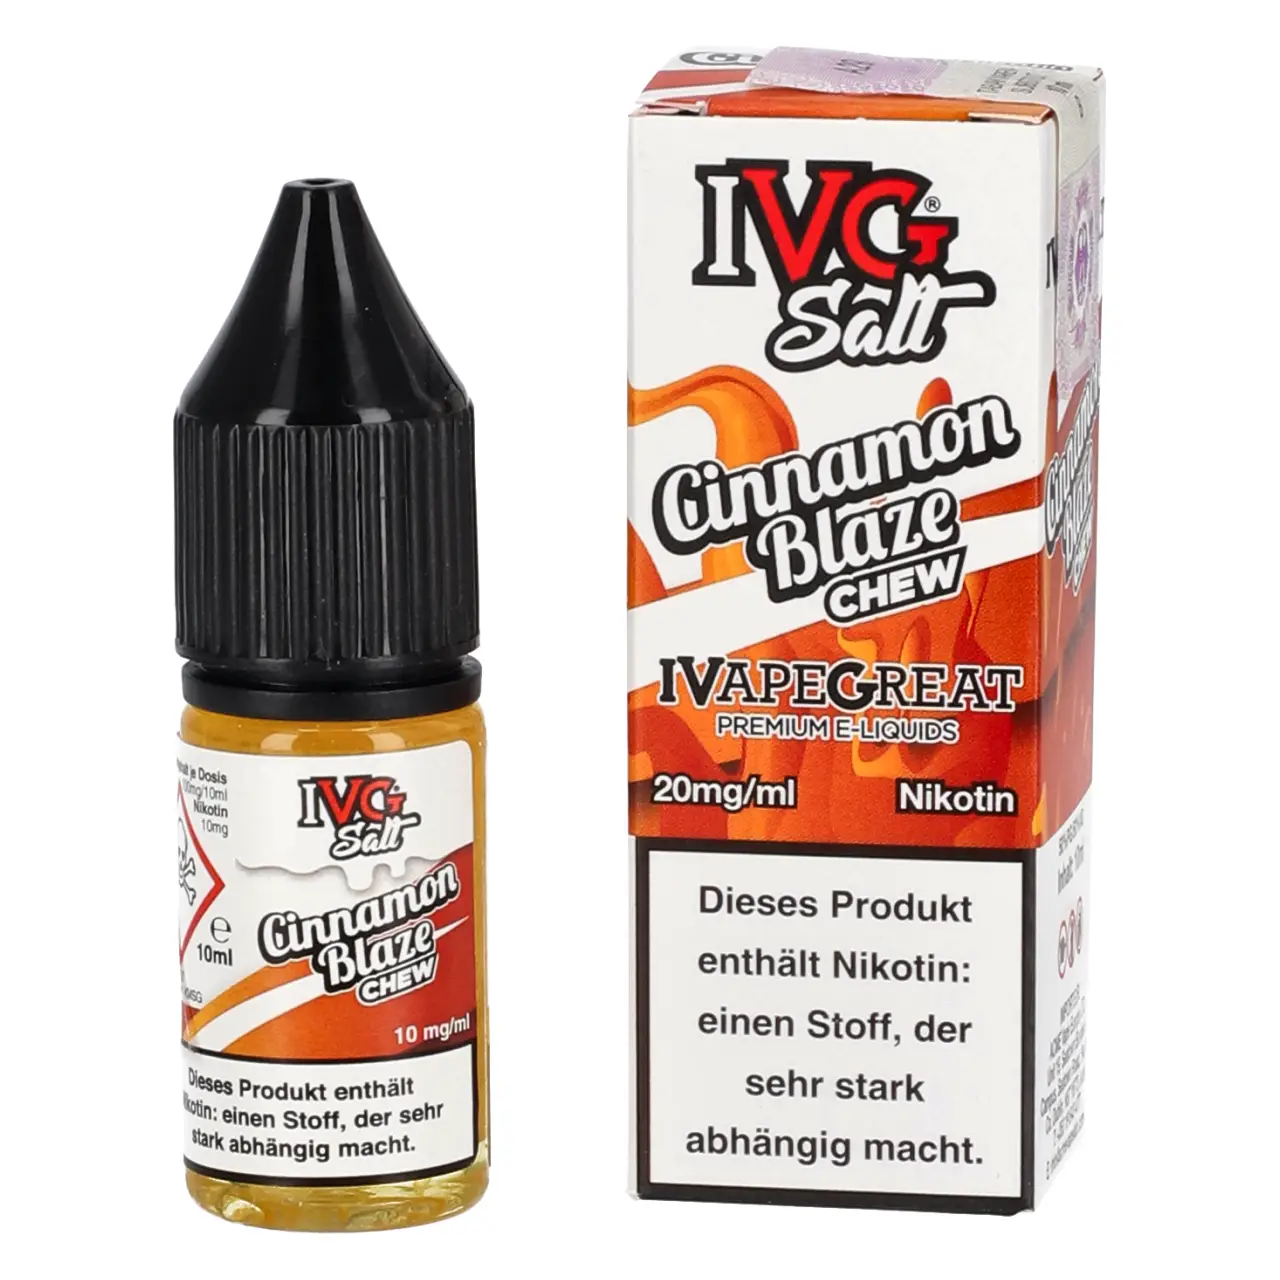 IVG Salt Cinnamon Blaze Chew - Nikotinsalz Liquid in der 10ml Flasche